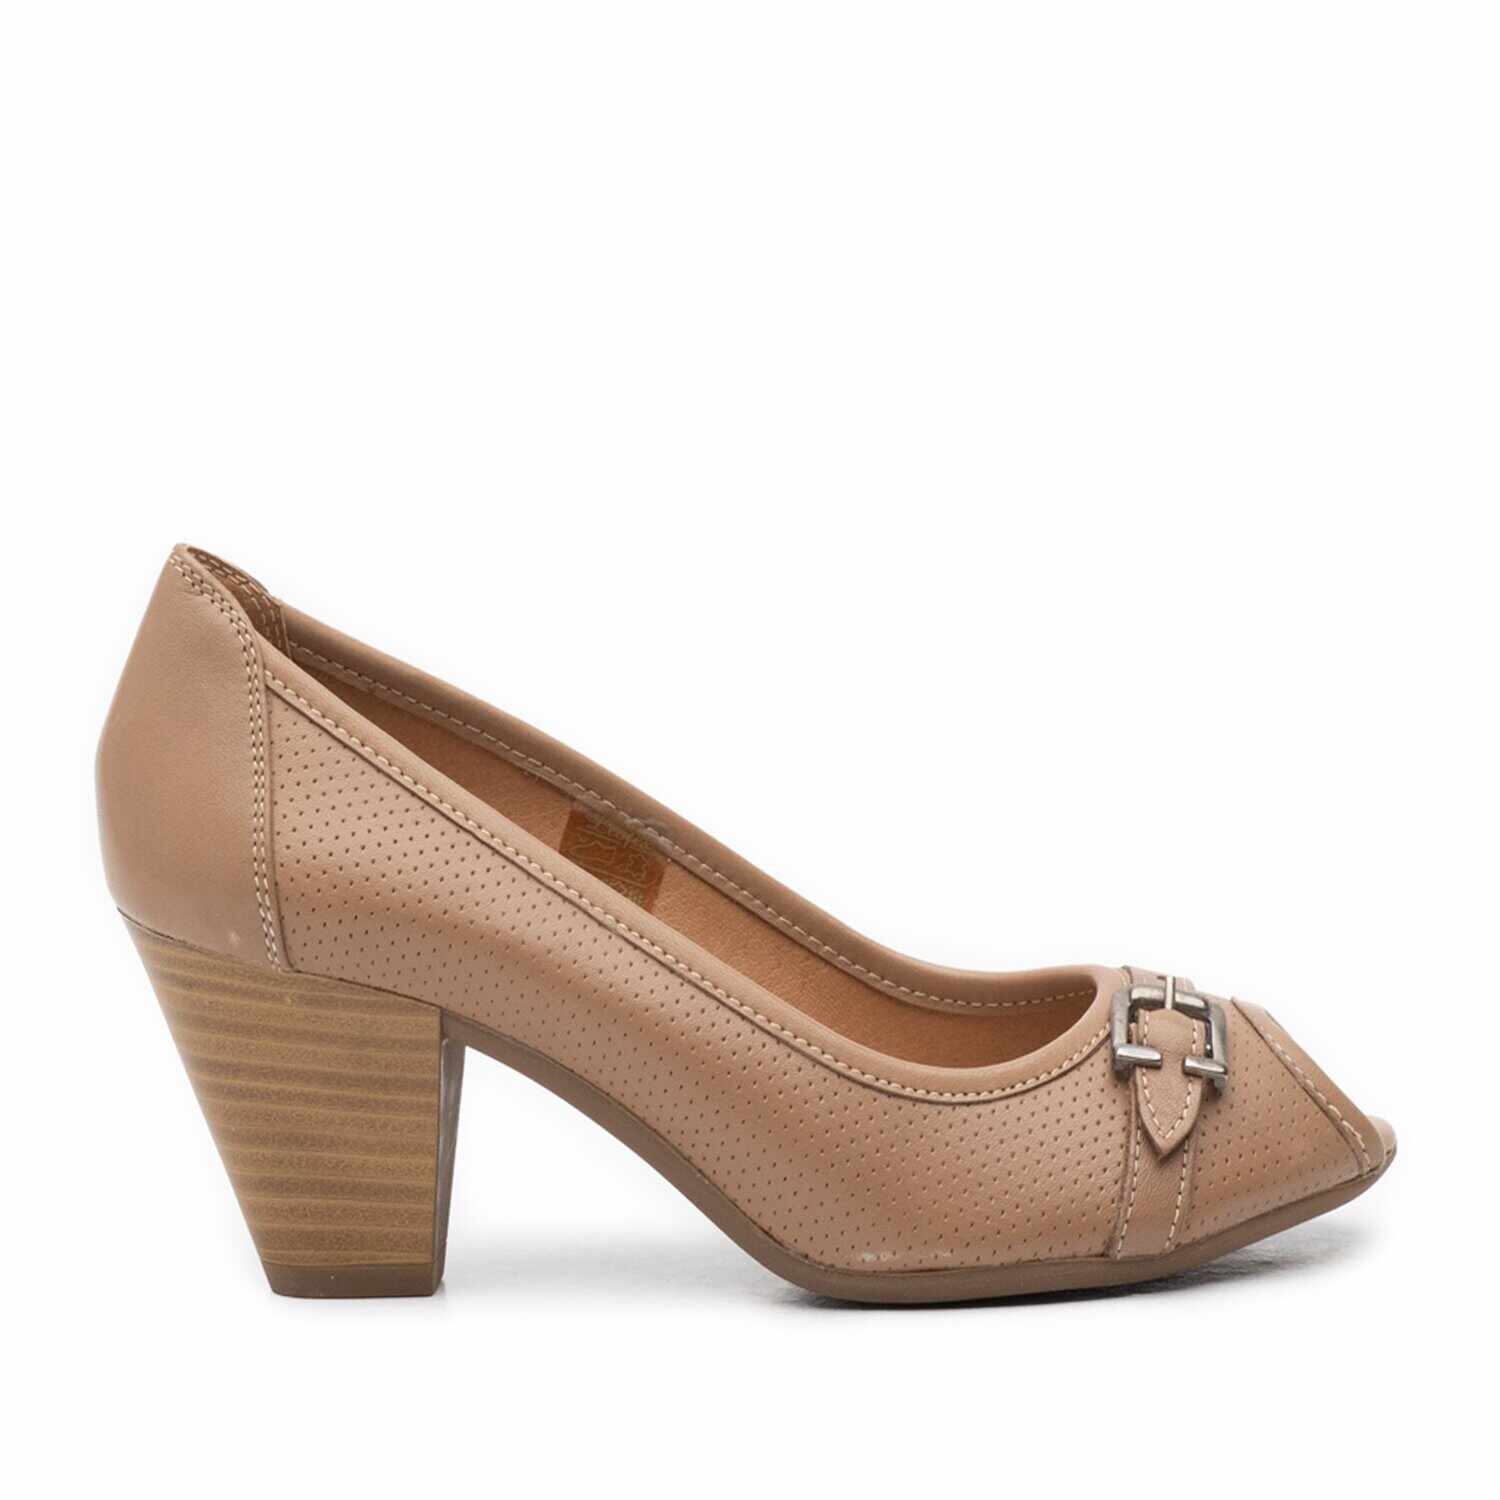 Pantofi casual cu toc dama de piele naturala, Leofex - 276-1 taupe